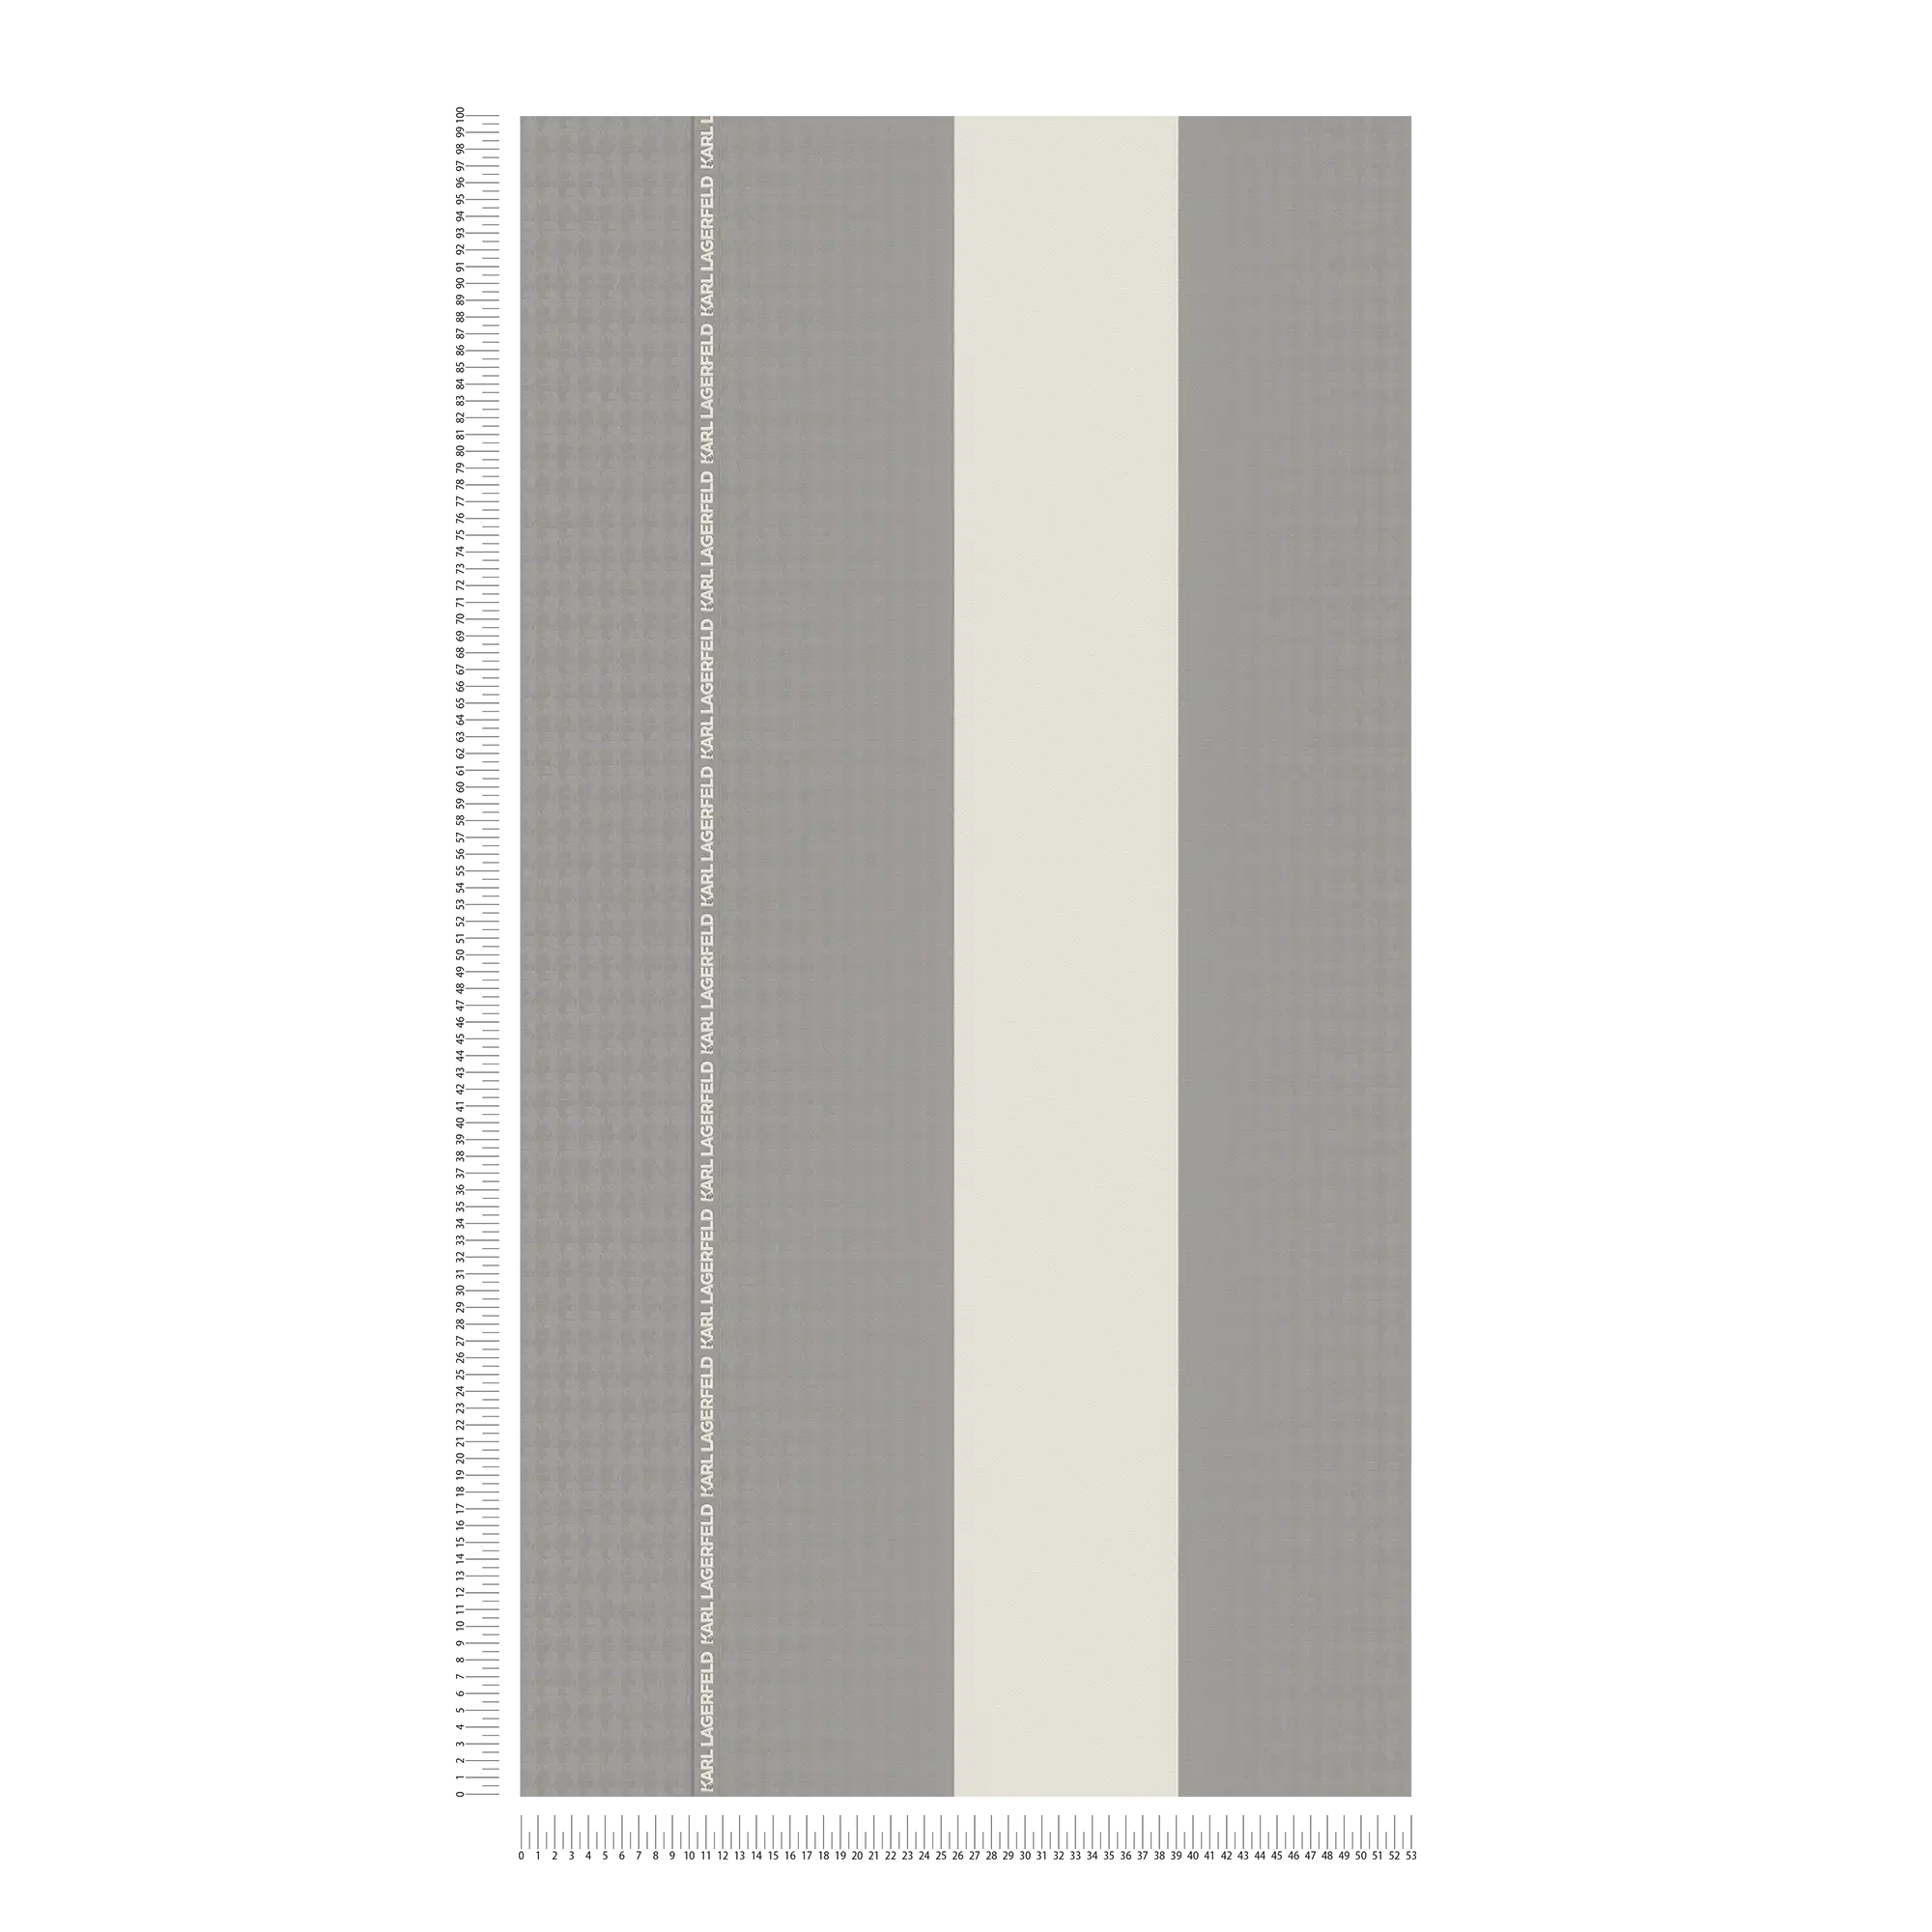             Karl LAGERFELD vliesbehangstroken met textuureffect - grijs, wit
        